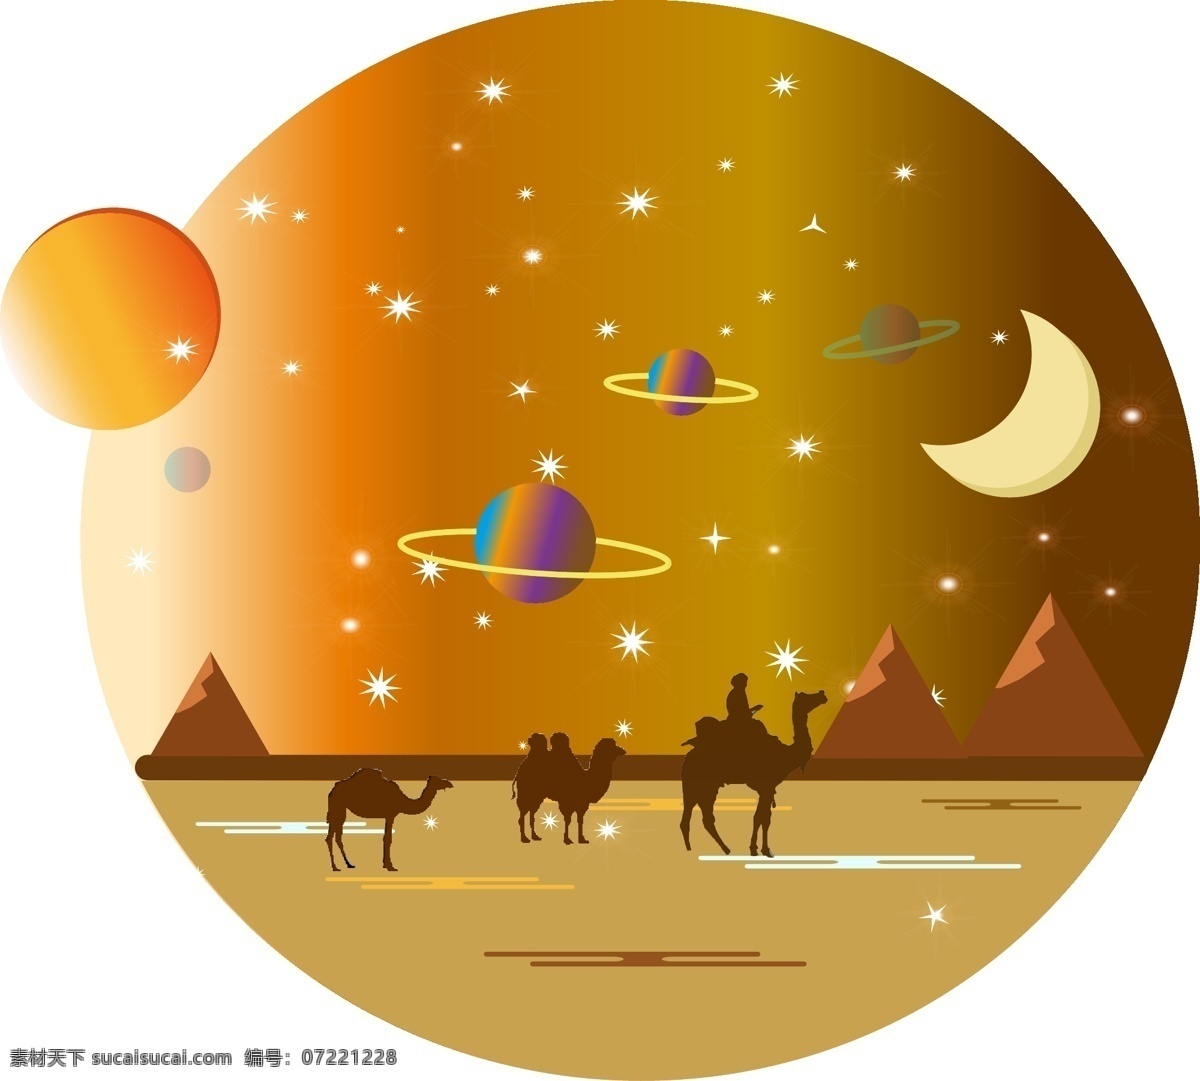 日月星辰 星空 沙漠 星星 宇宙 商用 原创 日月 星辰 夜空 沙漠星空 沙漠星空元素 沙漠场景 沙漠夜空